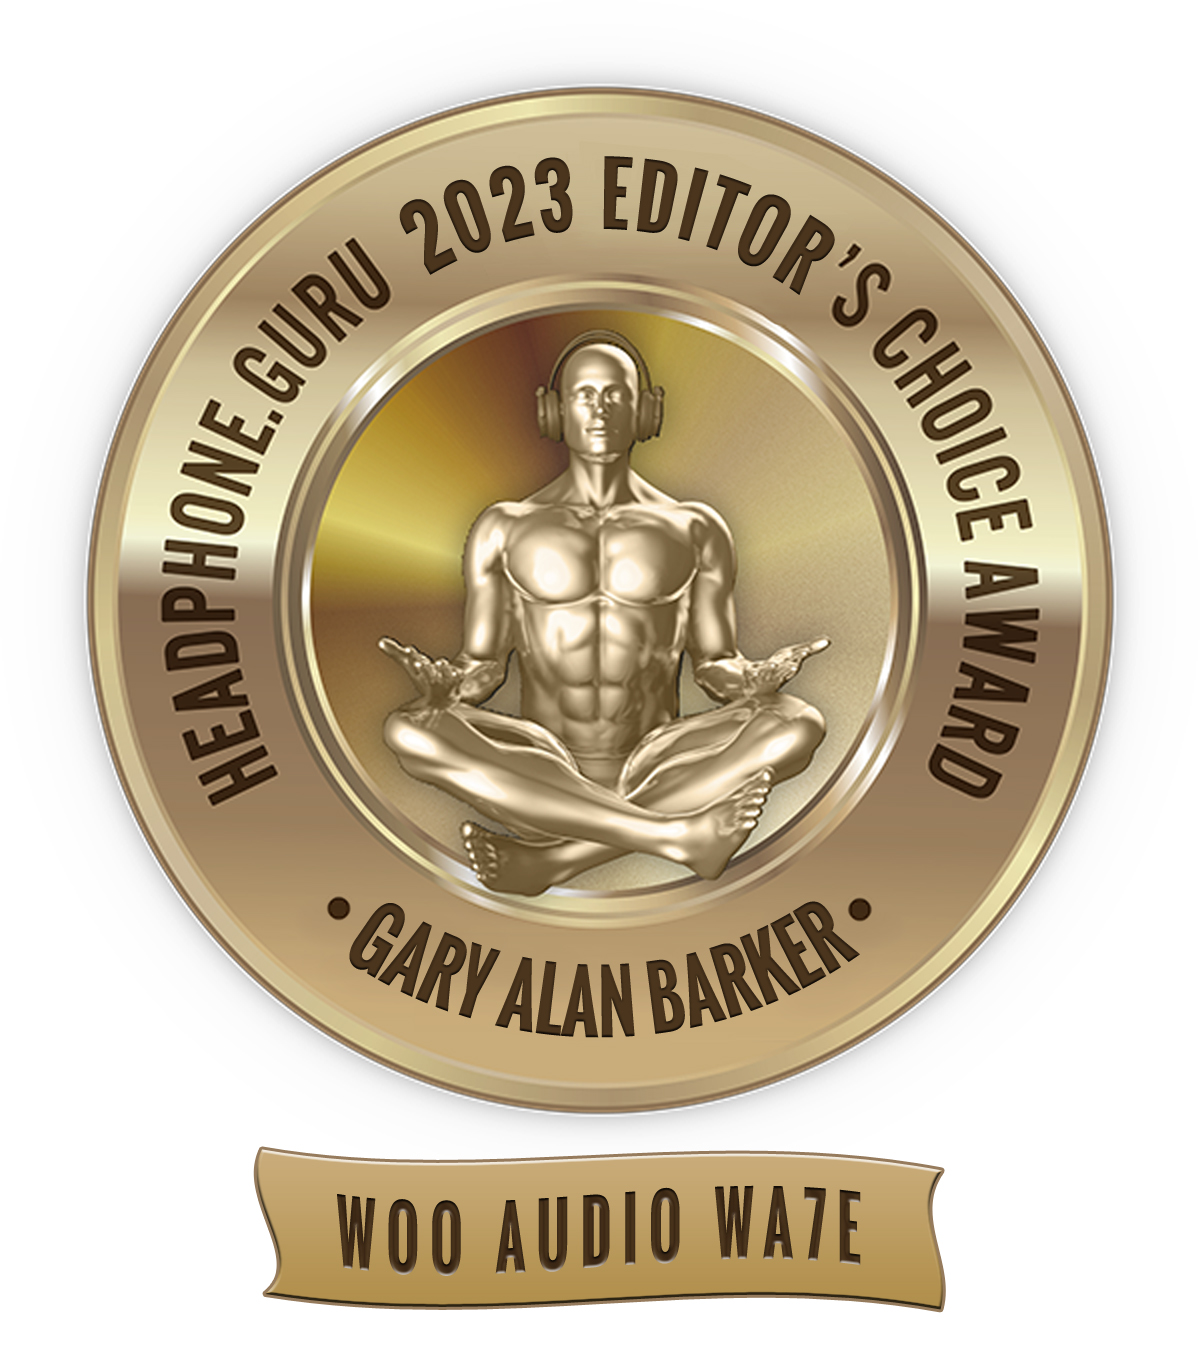 Editor’s Choice Award for 2023 – Woo Audio WA7e